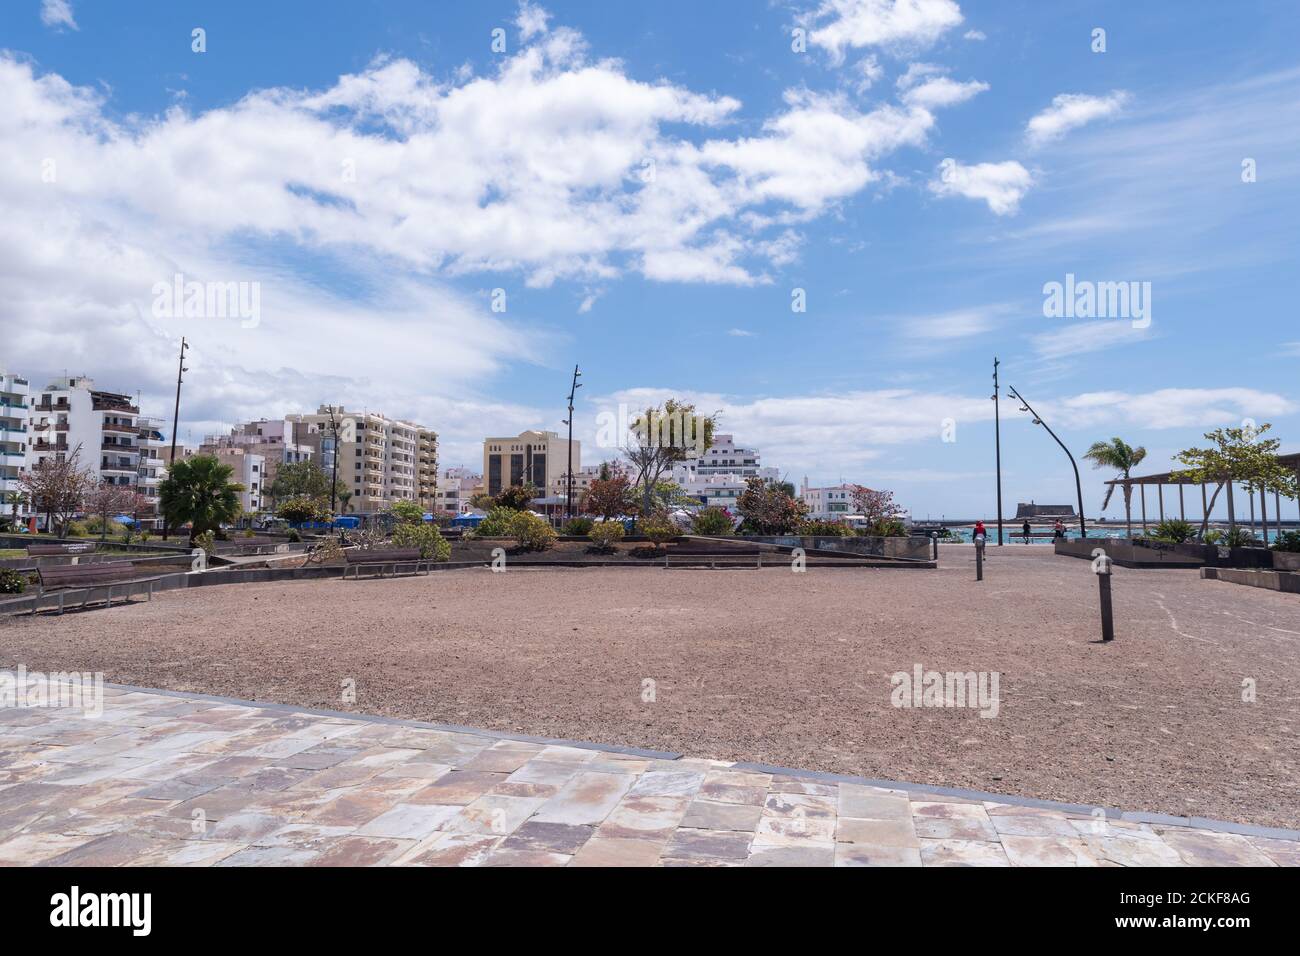 Lanzarote / España - 20 de marzo de 2016: Parque en el centro de la ciudad de Arrecife en la isla de Lanzarote, Islas Canarias, España Foto de stock